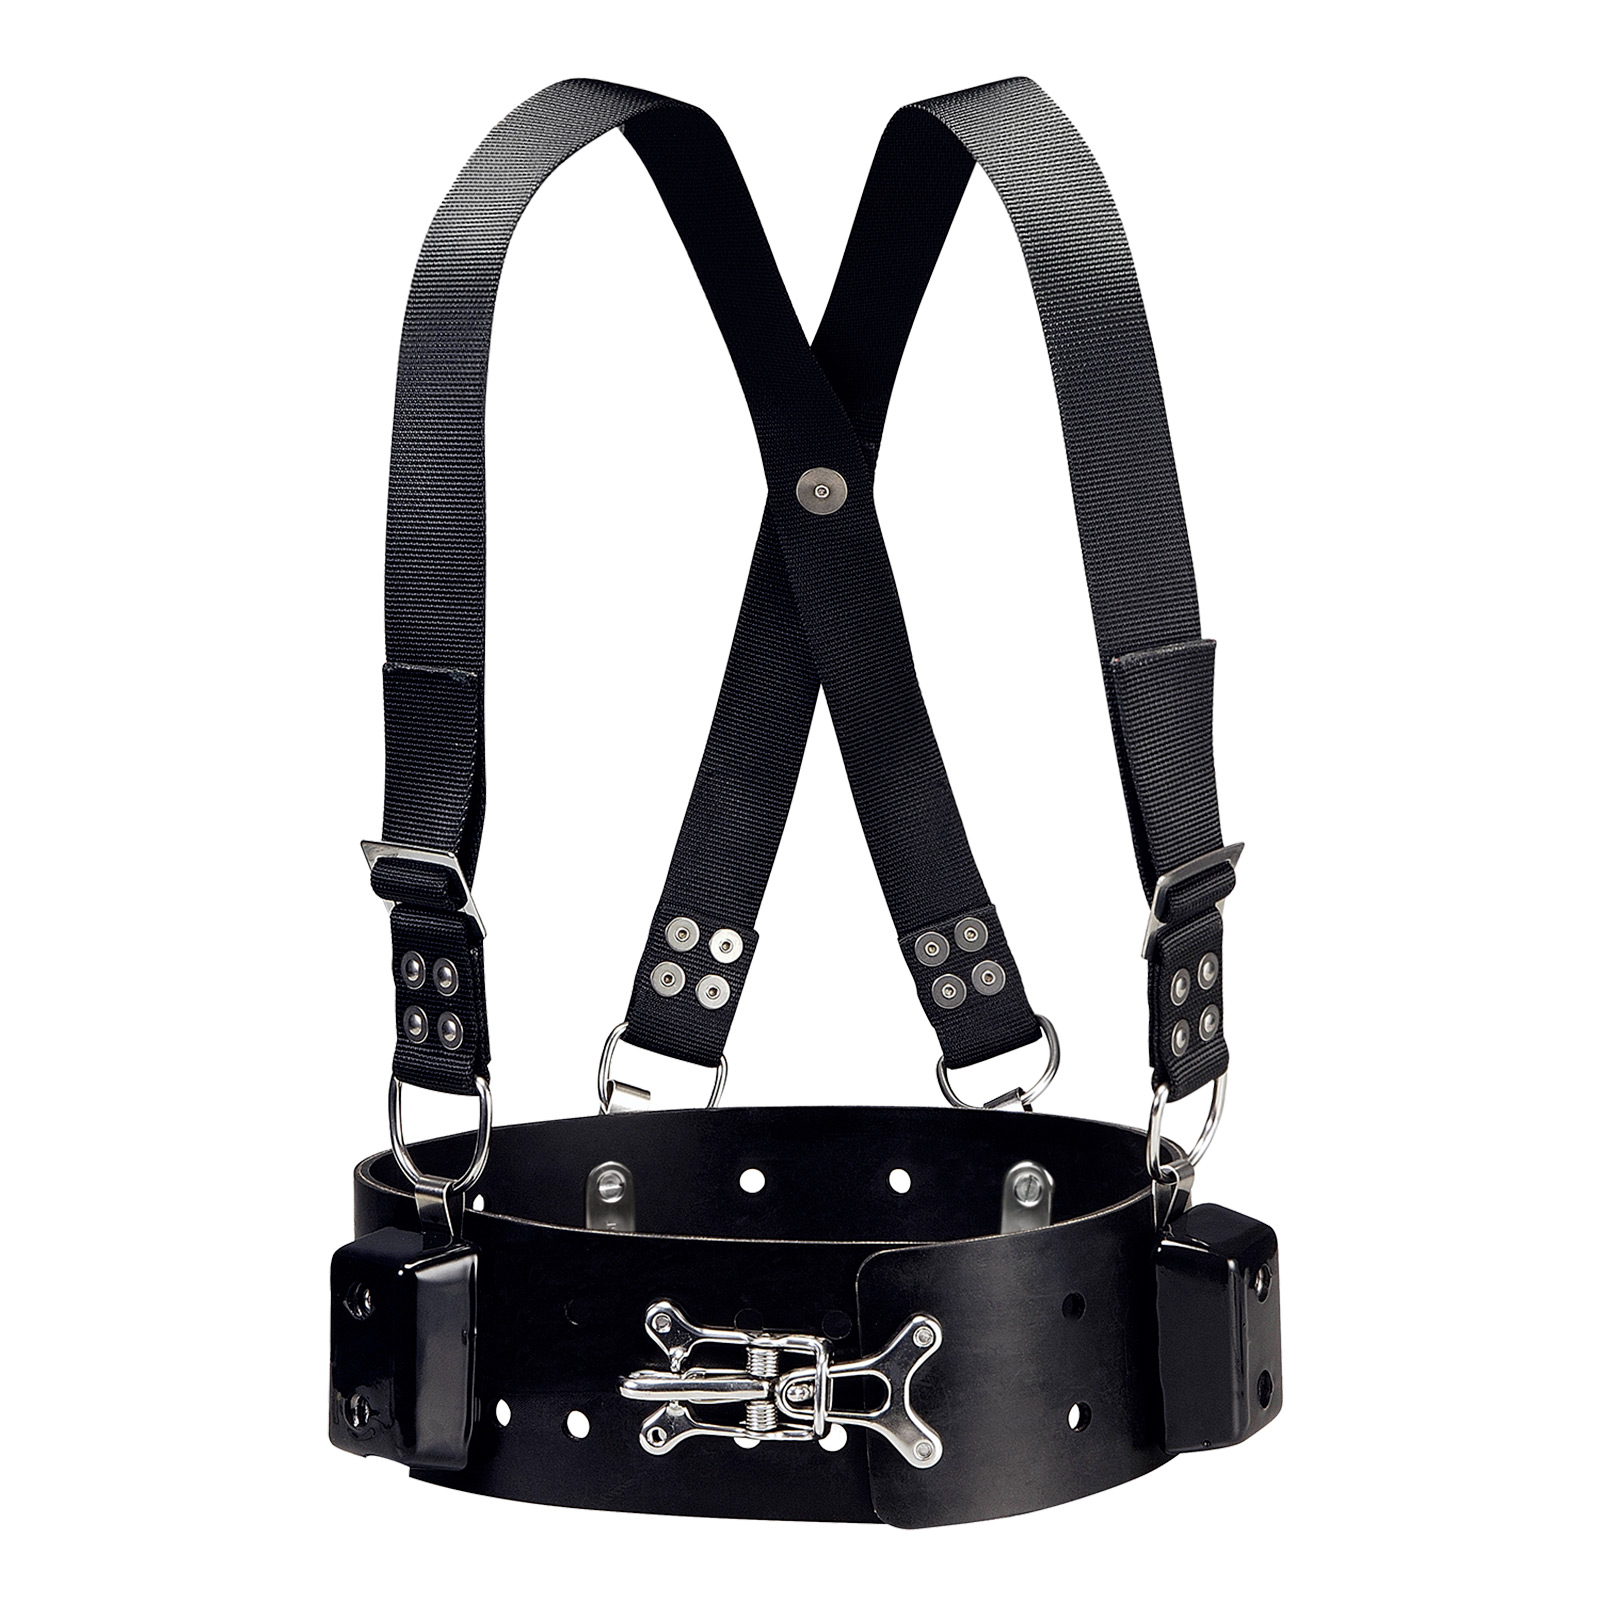 40lb Commercial diving weight belt with adjustable shoulder straps